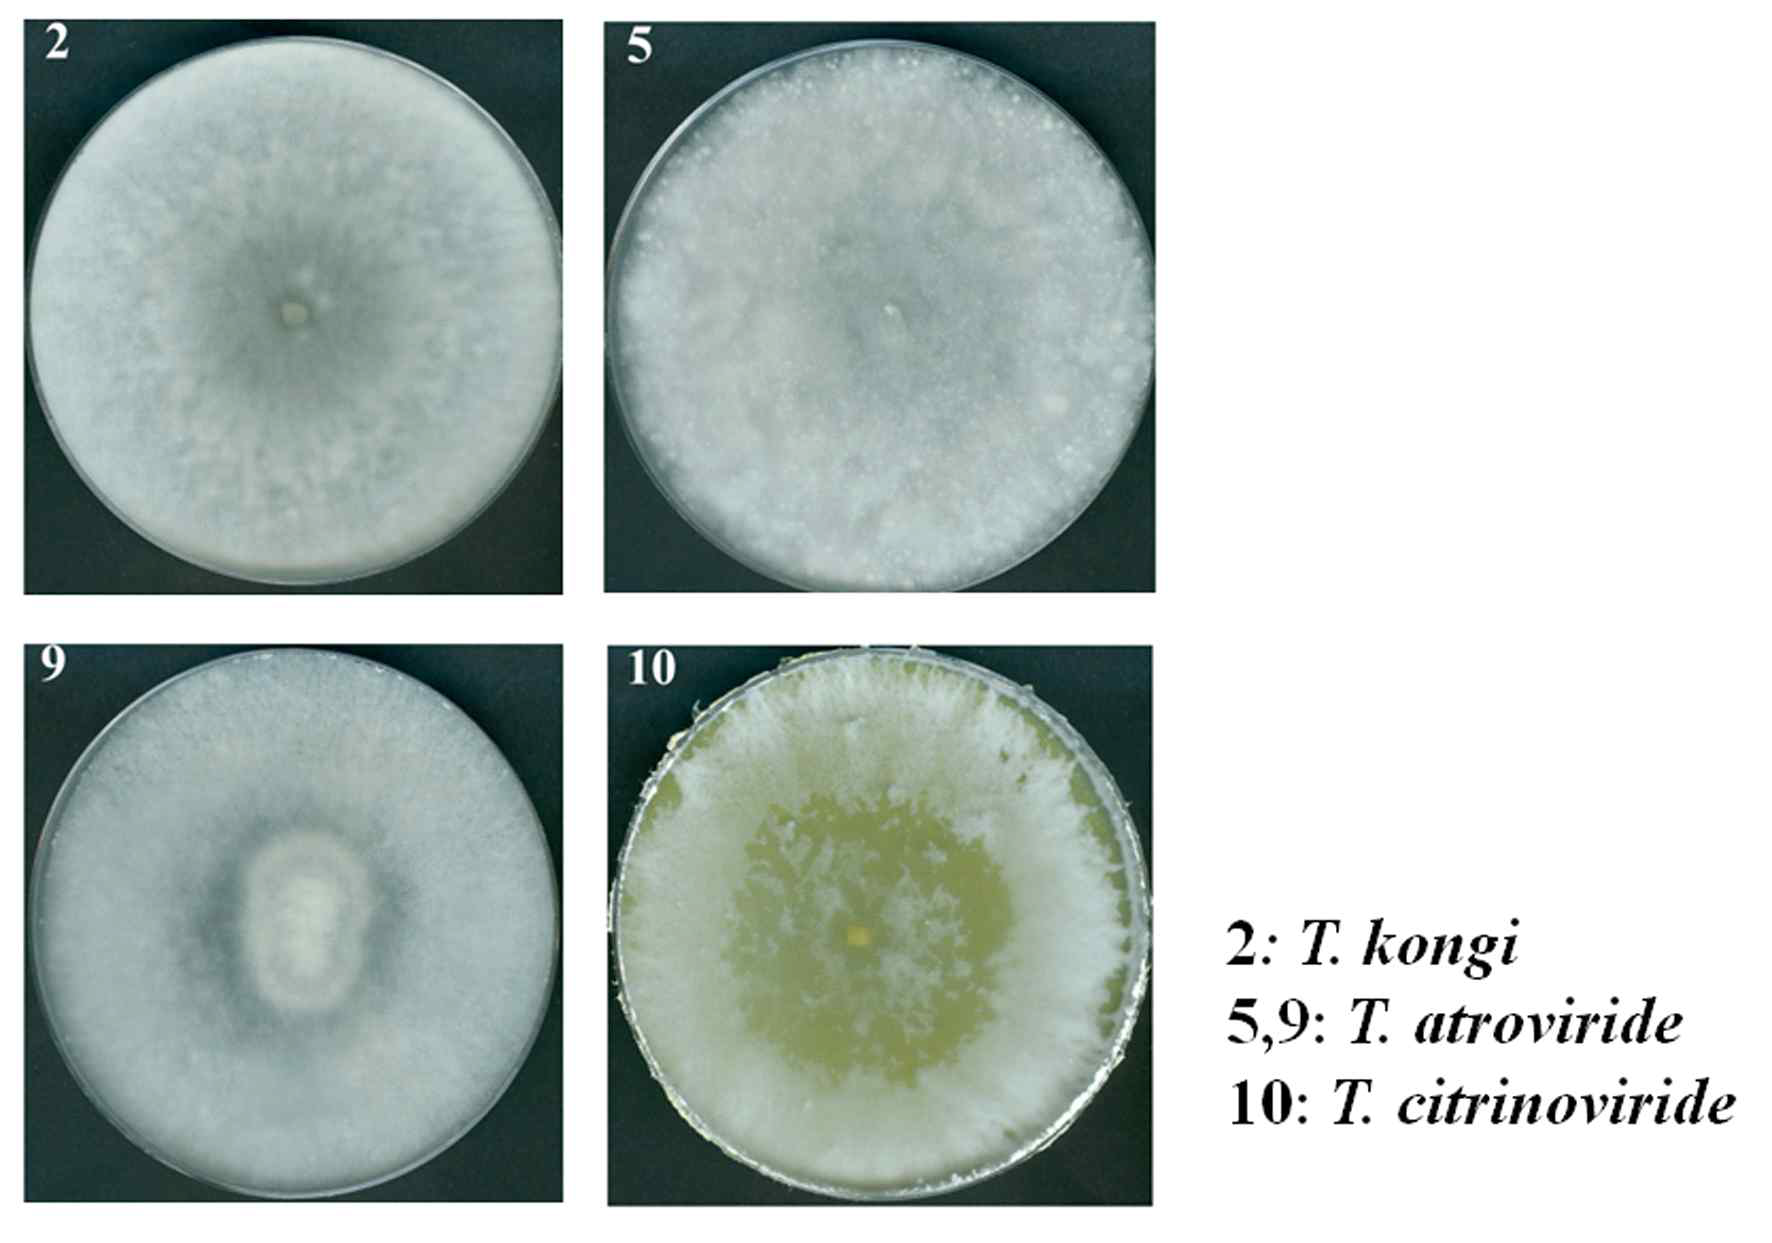 느타리버섯(Pleurotus ostreatus)으로 부터 분리한 느타리버섯 오염균주의 형태 적 관찰. PDA 고체배지에 접종하여 30℃에서 1주일간 배양 후 관찰. 2, T. kongi; 5,9, T. atroviride; 10, T. citrinoviride